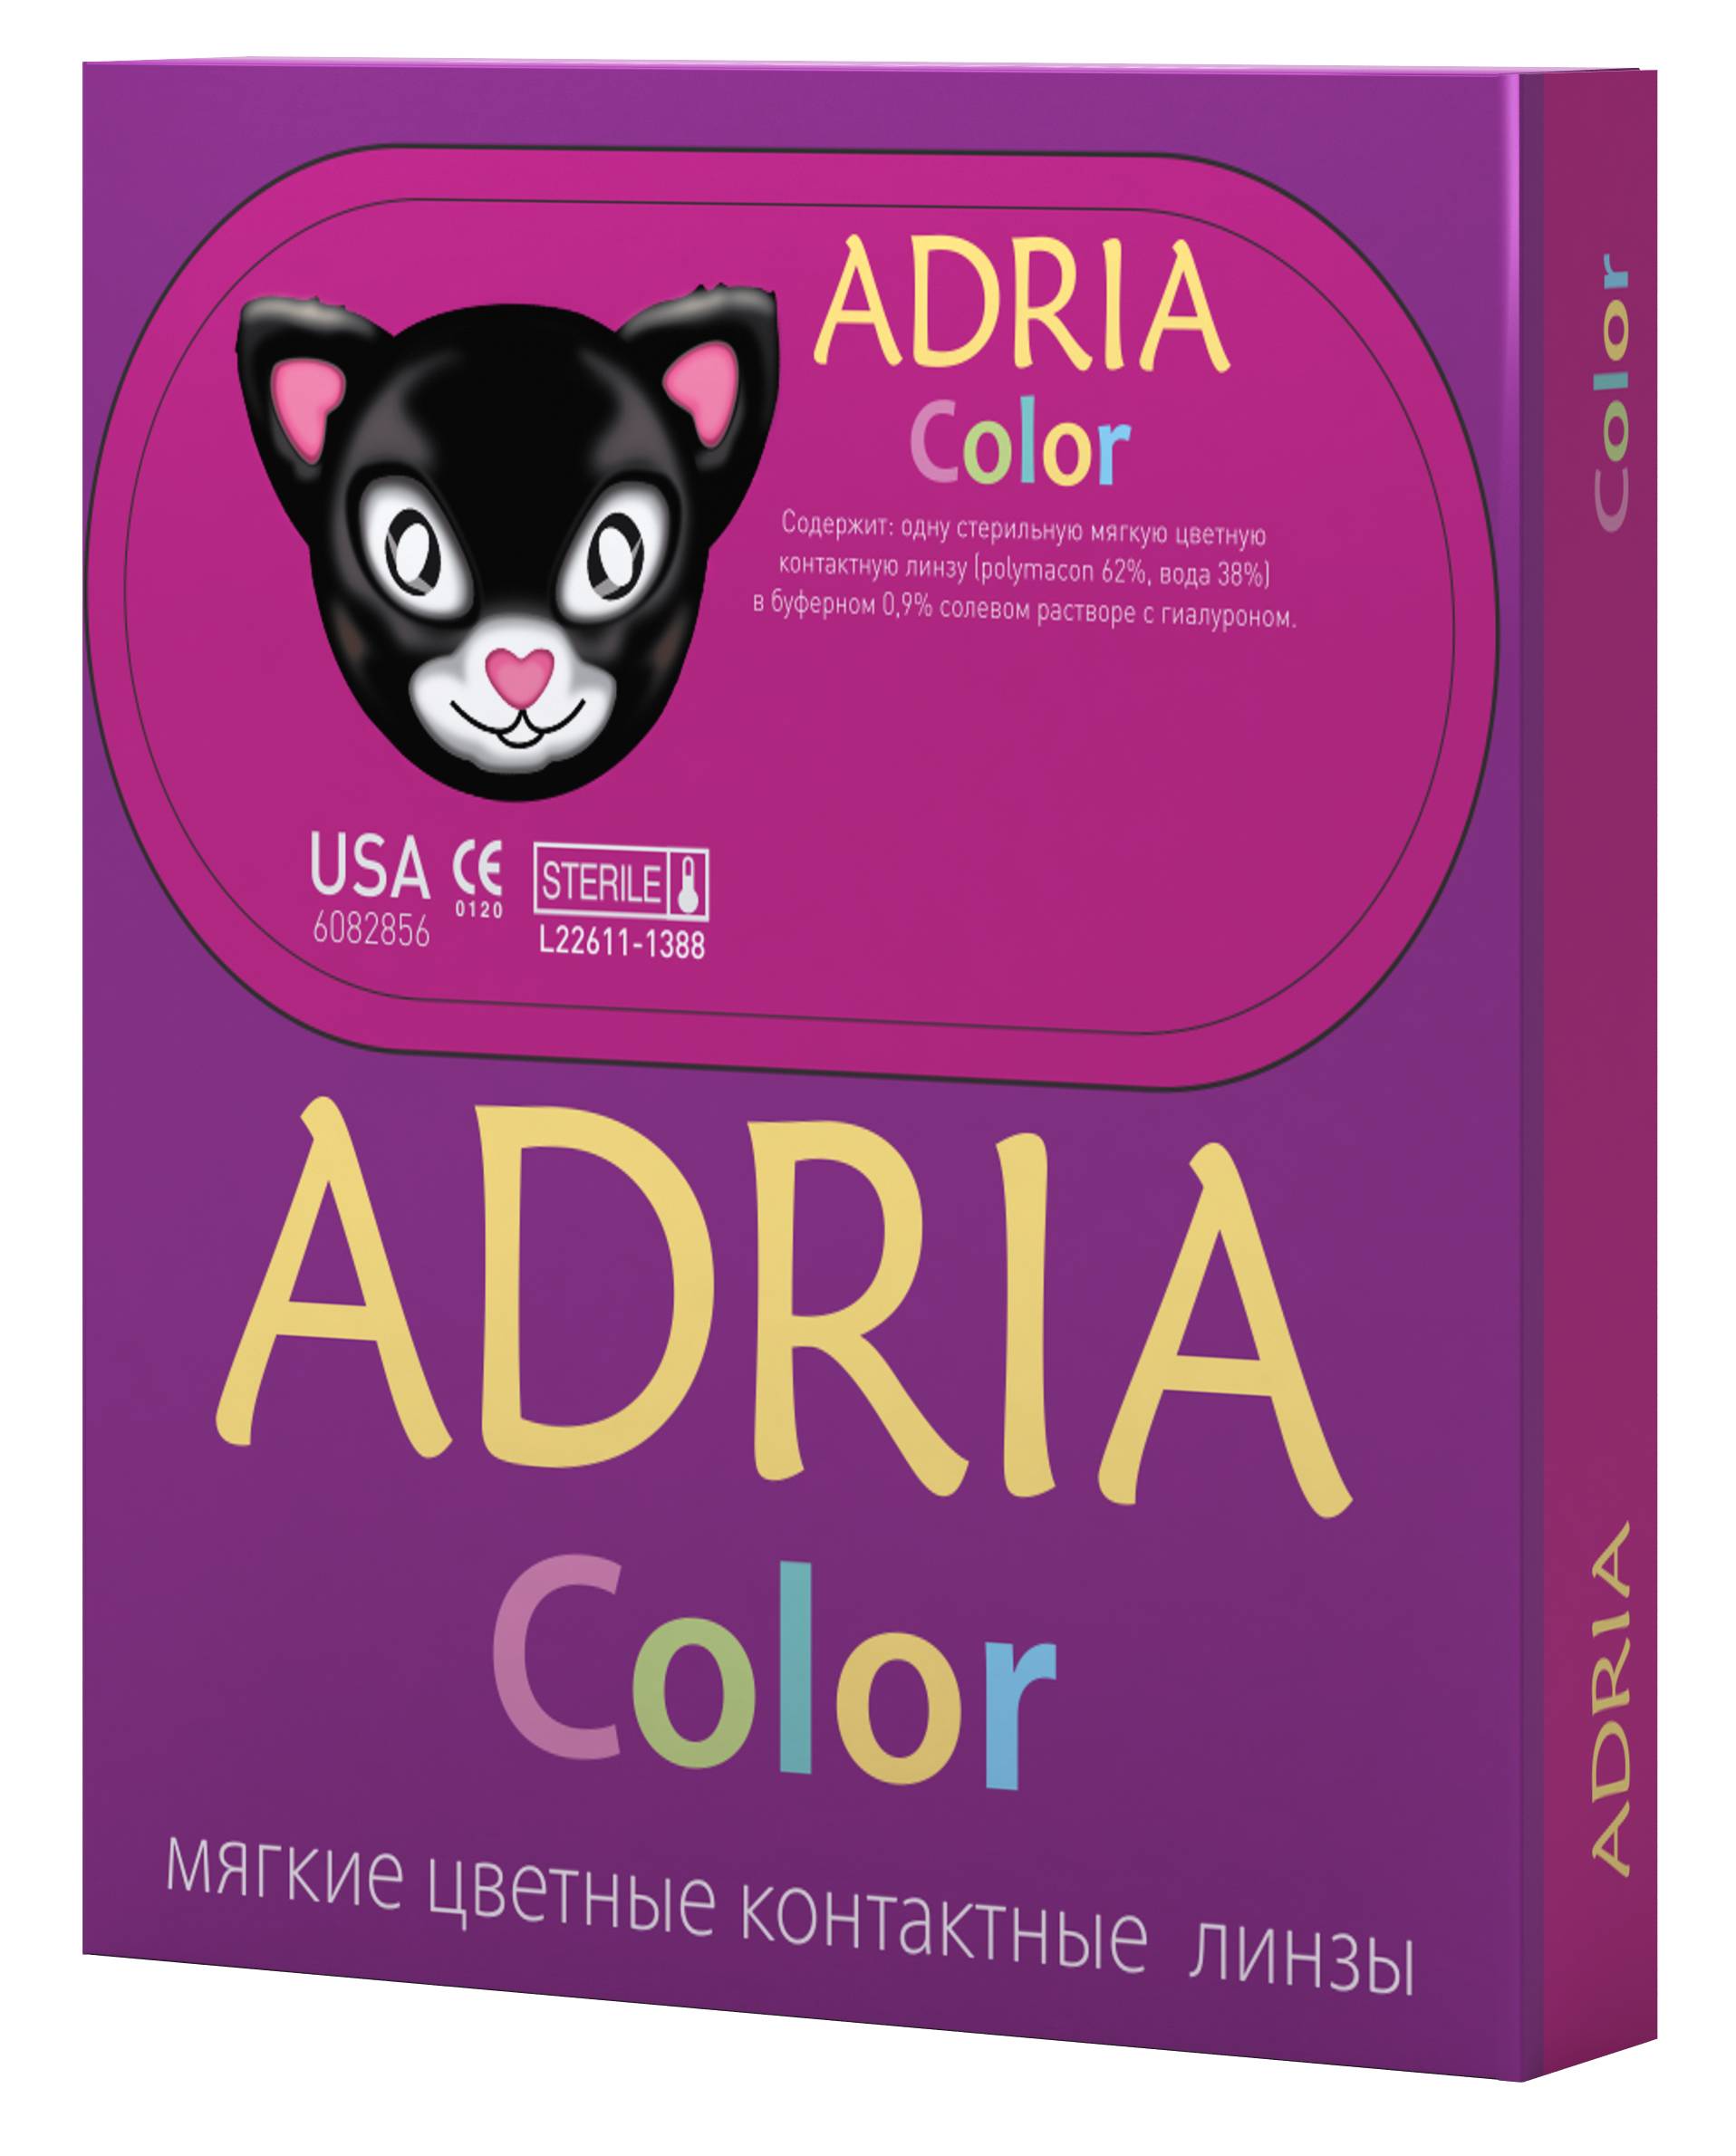 Линзы adria – обзор моделей, цена, отзывы